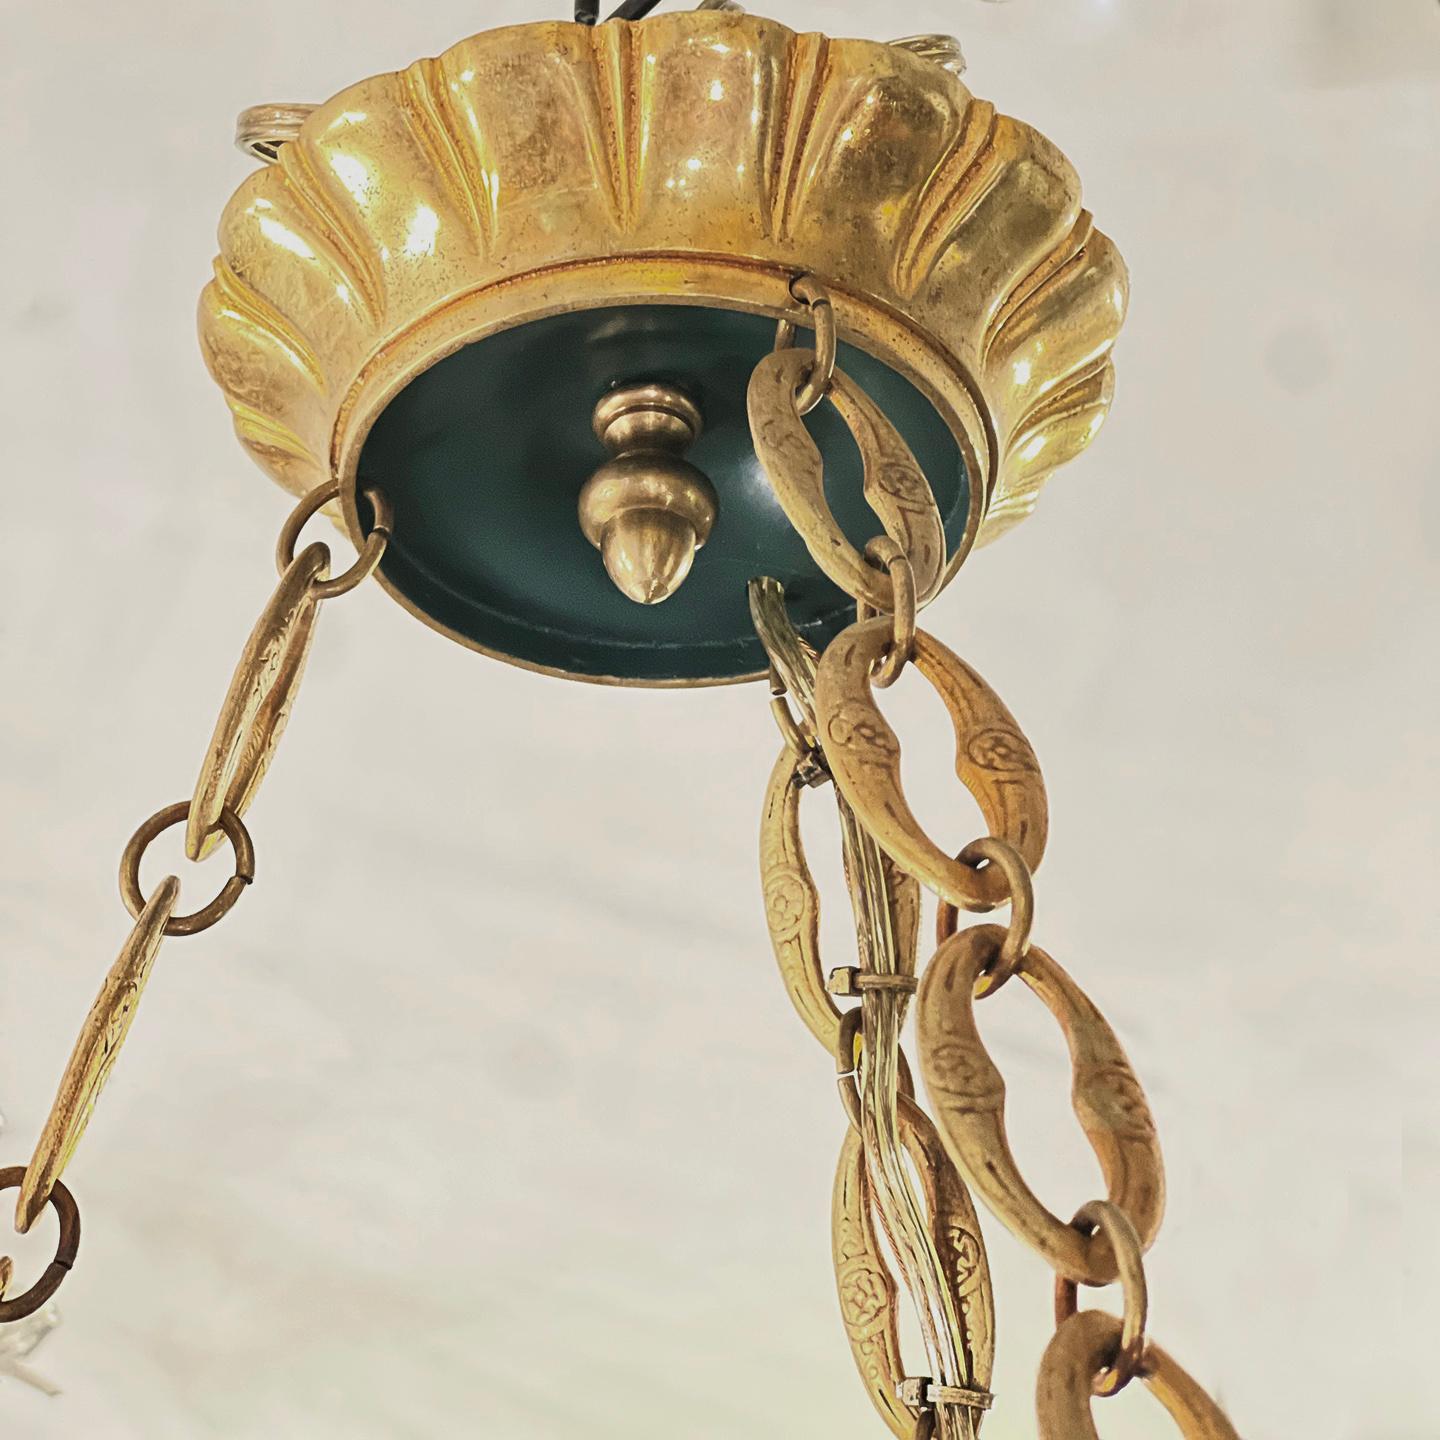 Paire de lustres en bronze à six bras de lumière, datant des années 1910, avec finition d'origine. Vendu à l'unité.

Mesures :
Chute : 32